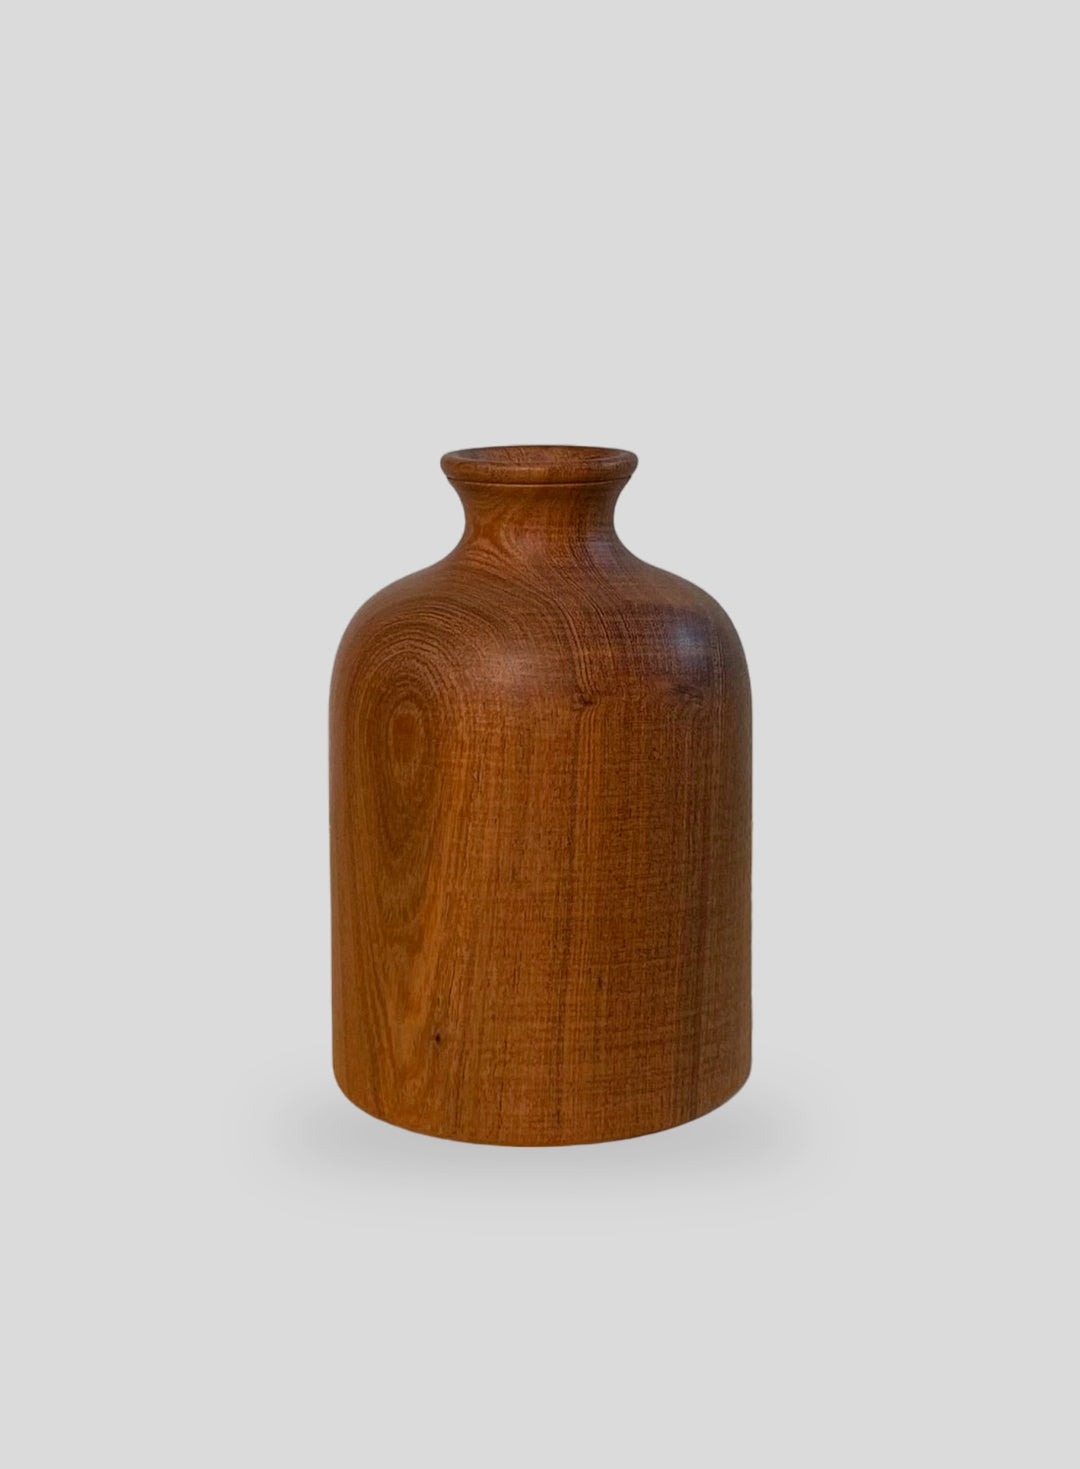 The Demijohn Vase in Algarrobo